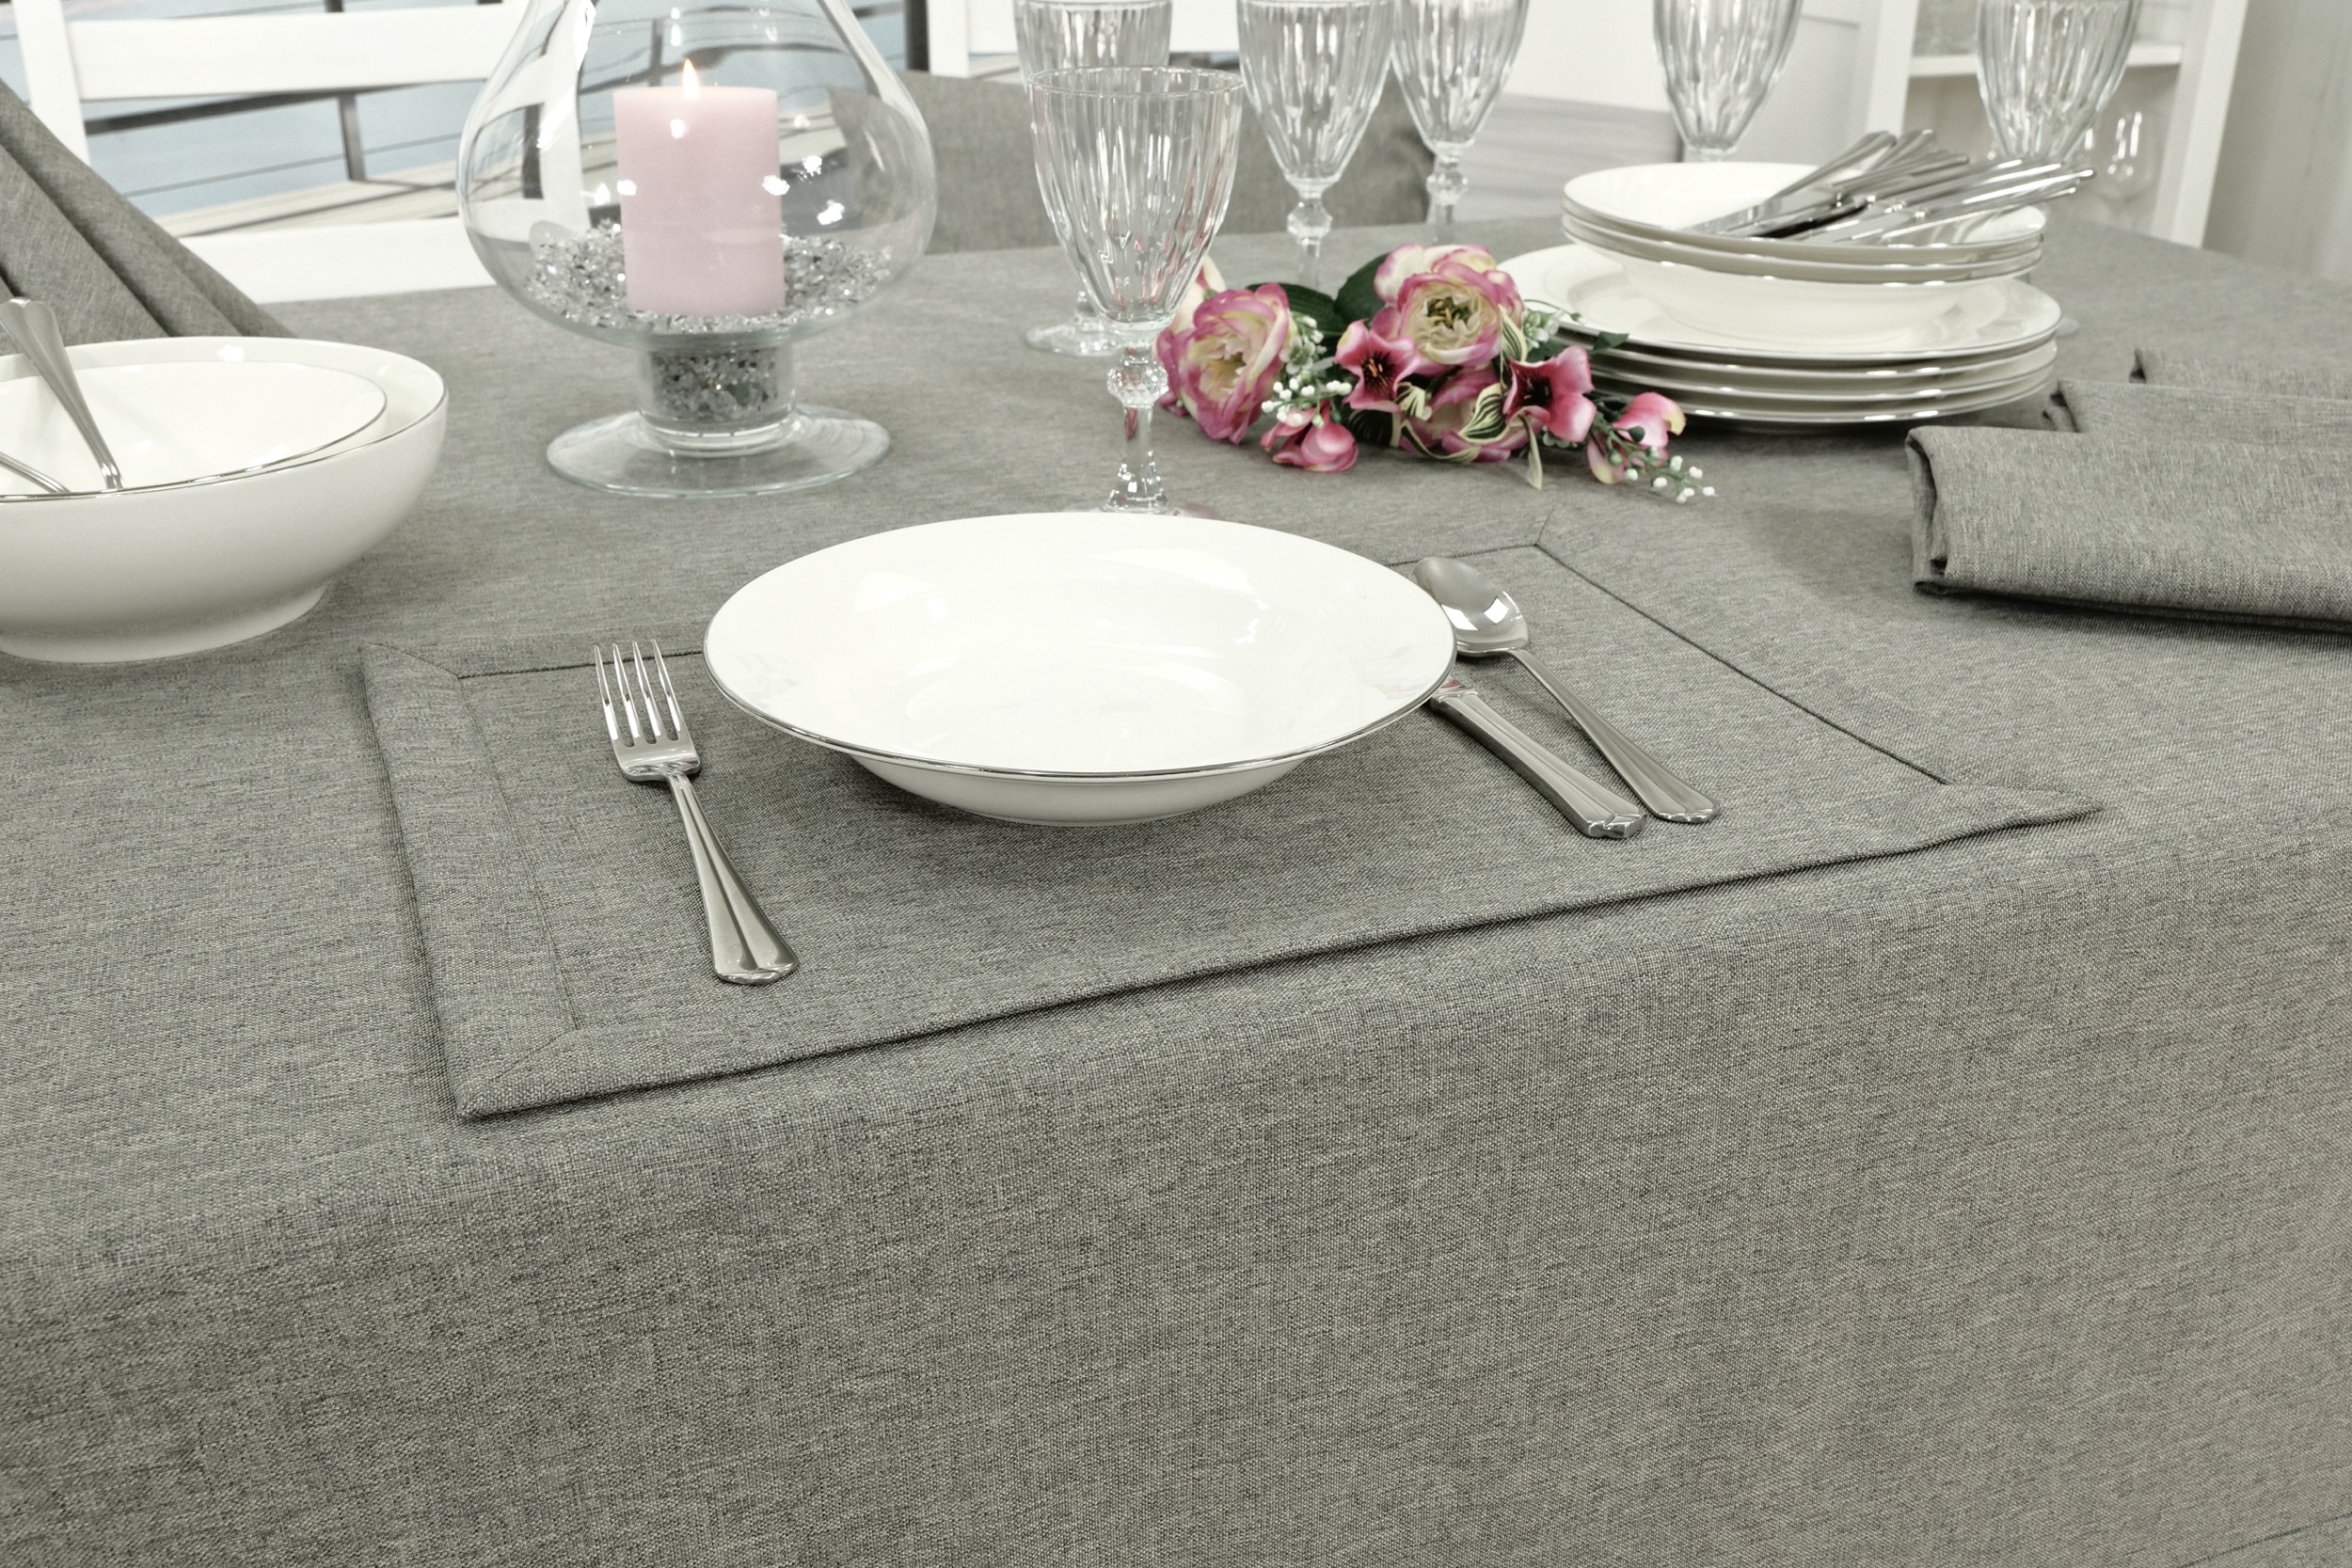 Edle Tischdecke Grau einfarbig Peony Breite 140 cm